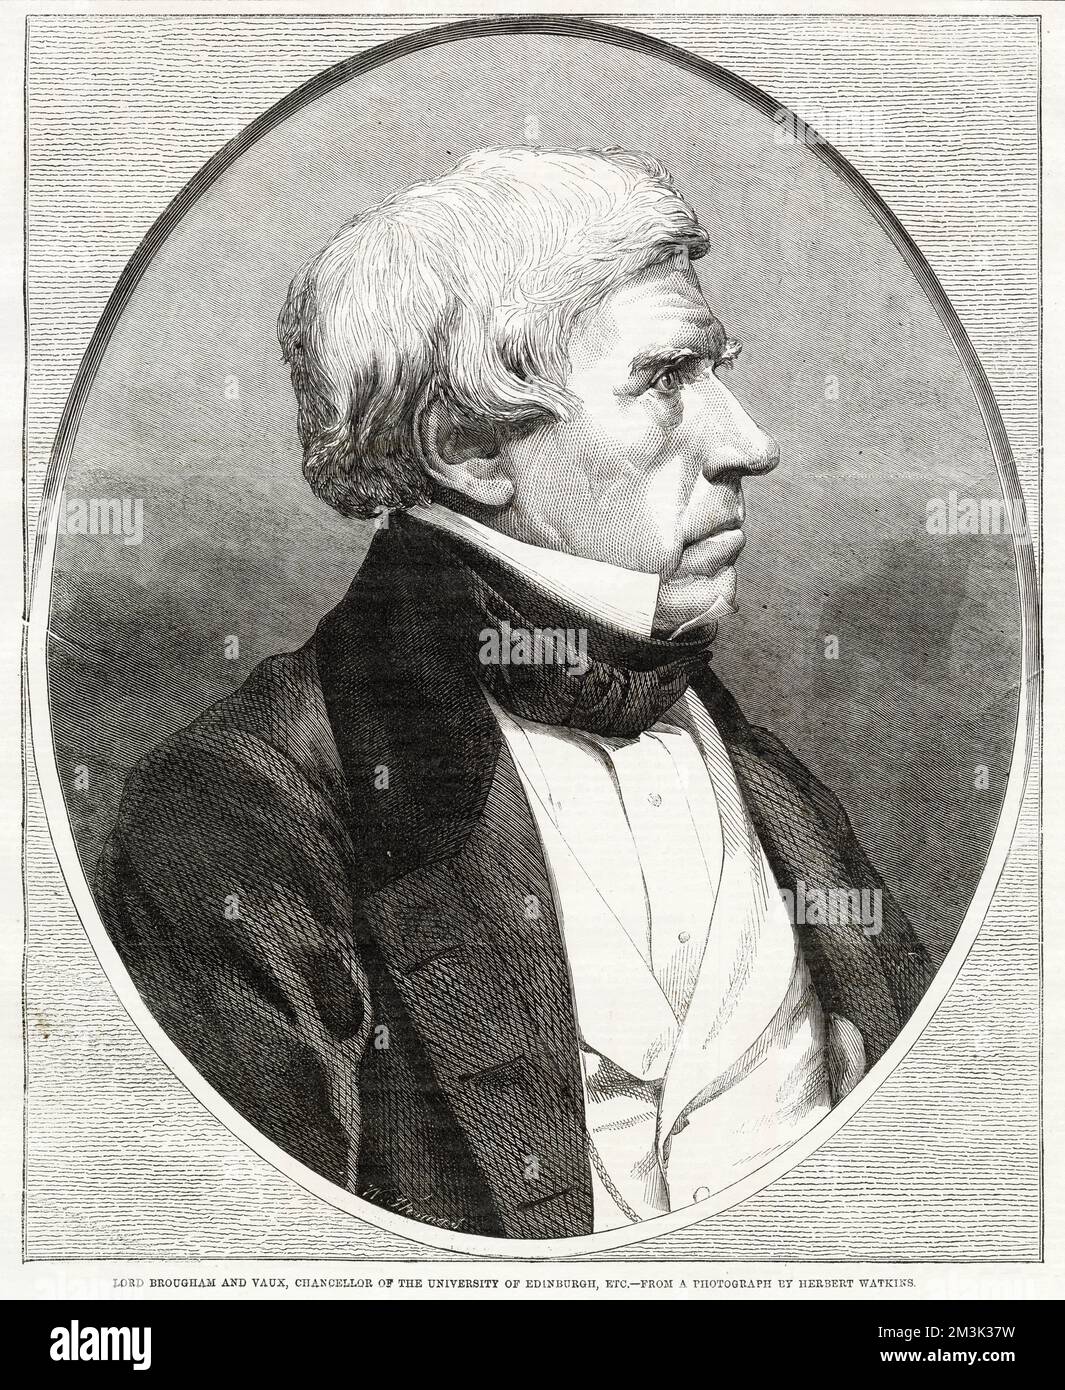 Henry Peter Brougham, 1st Barón Brougham y Vaux (1778 - 1868), político inglés, abogado y Lord Canciller de Inglaterra. Esta imagen fue publicada, cuando era Canciller de la Universidad de Edimburgo. Foto de stock